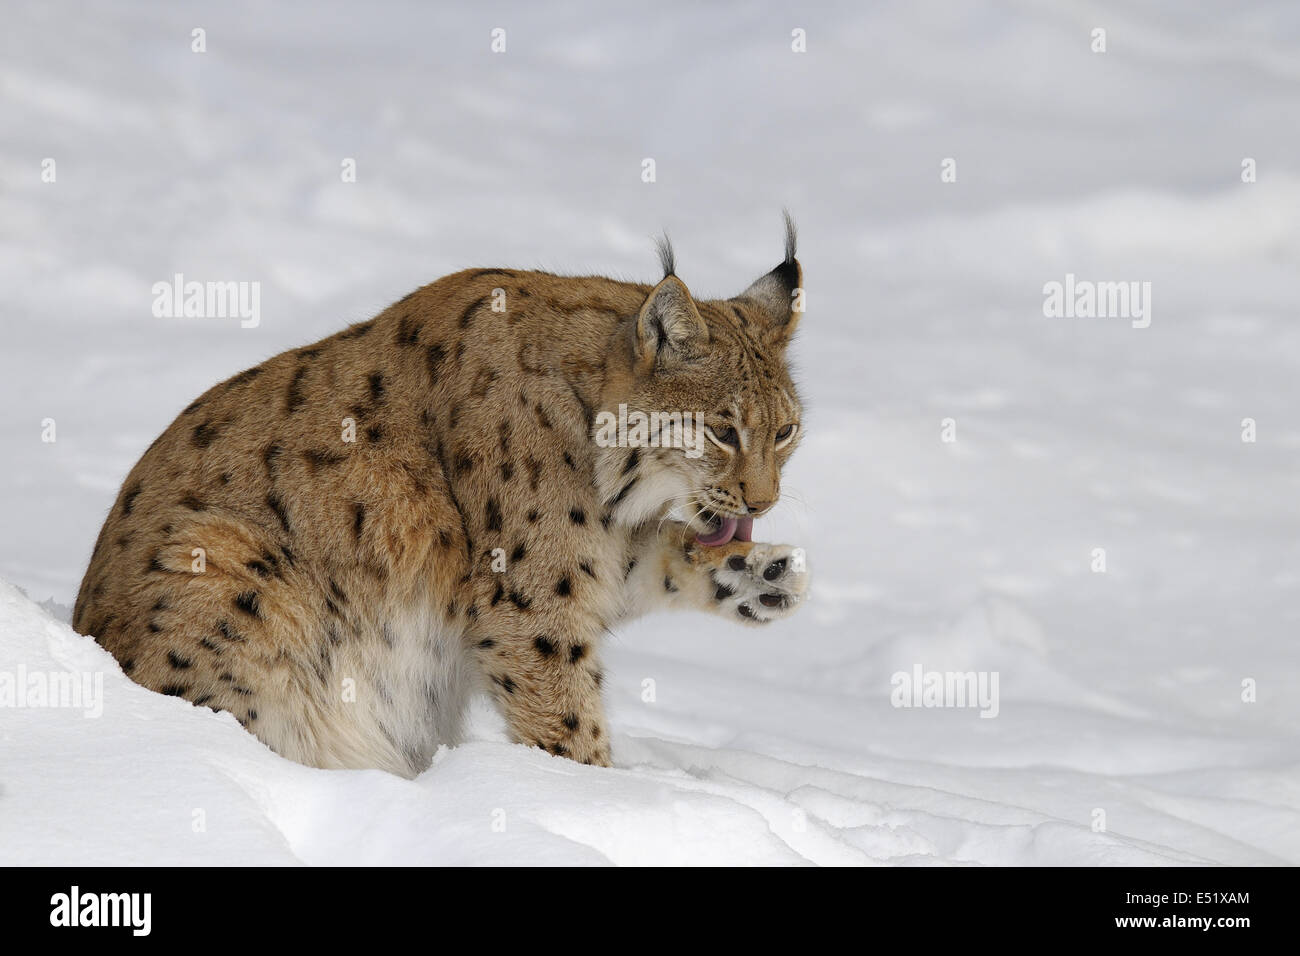 European lynx, Germany Stock Photo